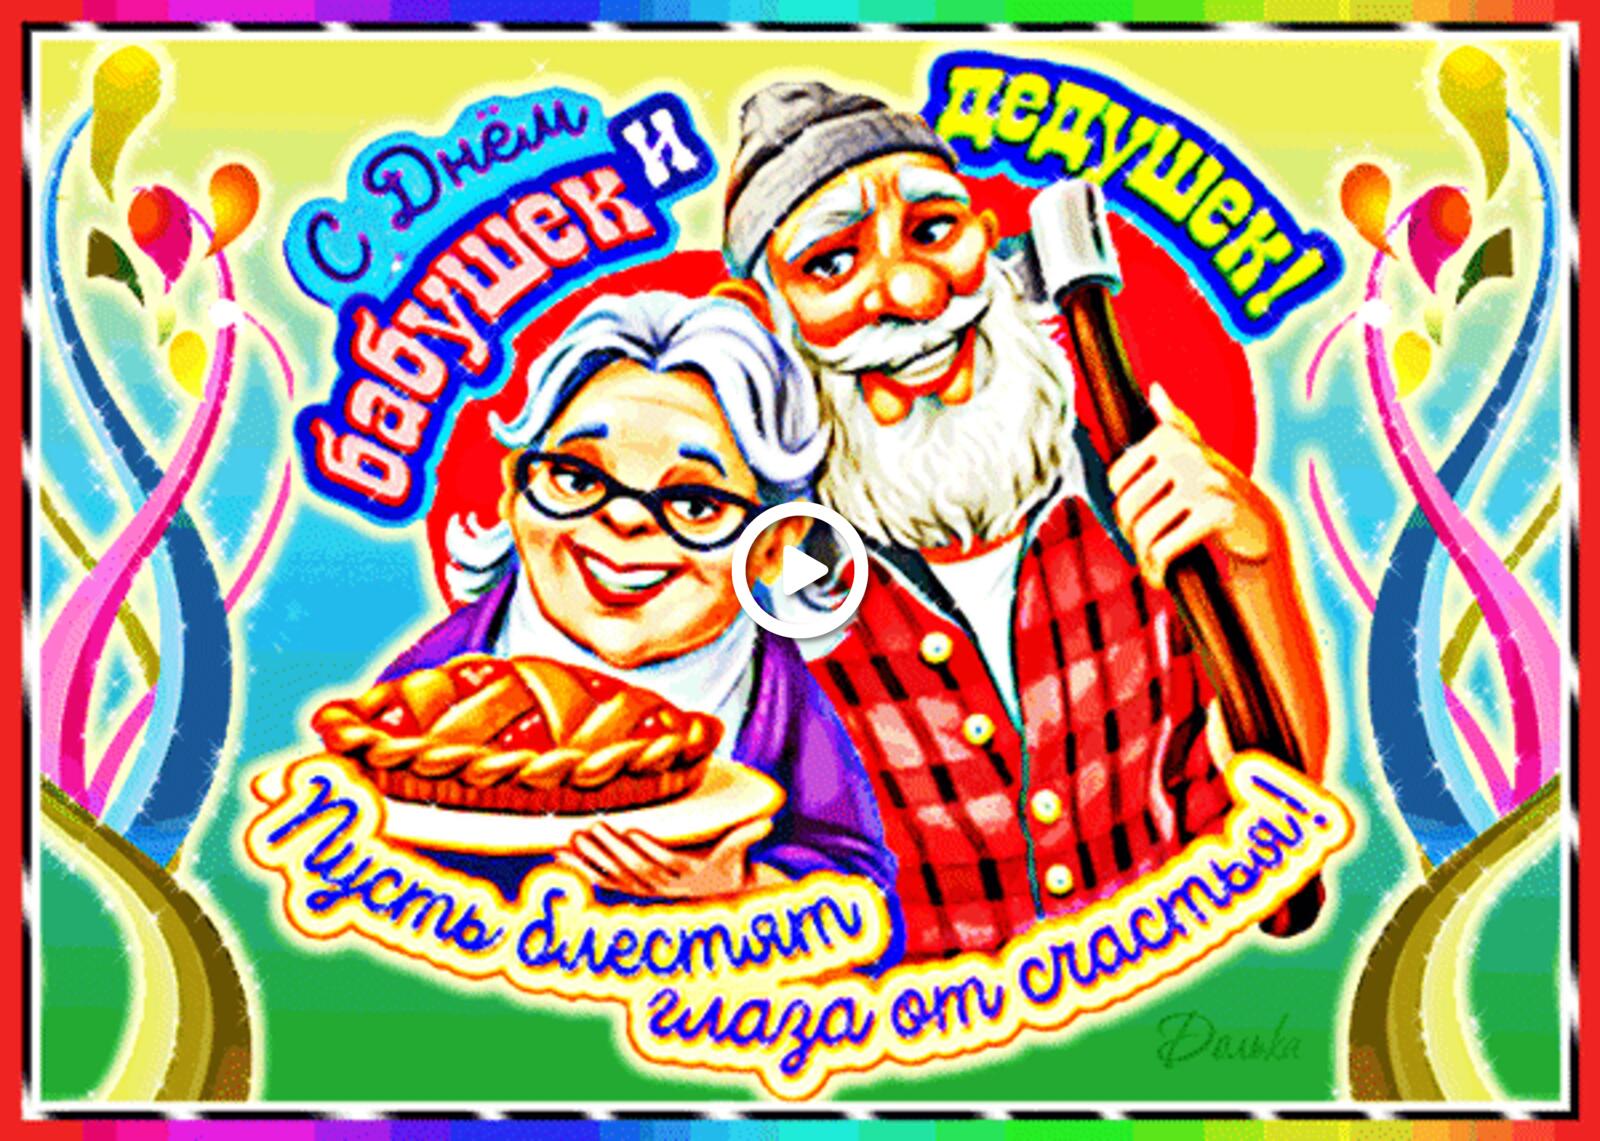 一张以祖父母节 祖父母节快乐贺卡 10 月 28 日祖父母节快乐贺卡为主题的明信片